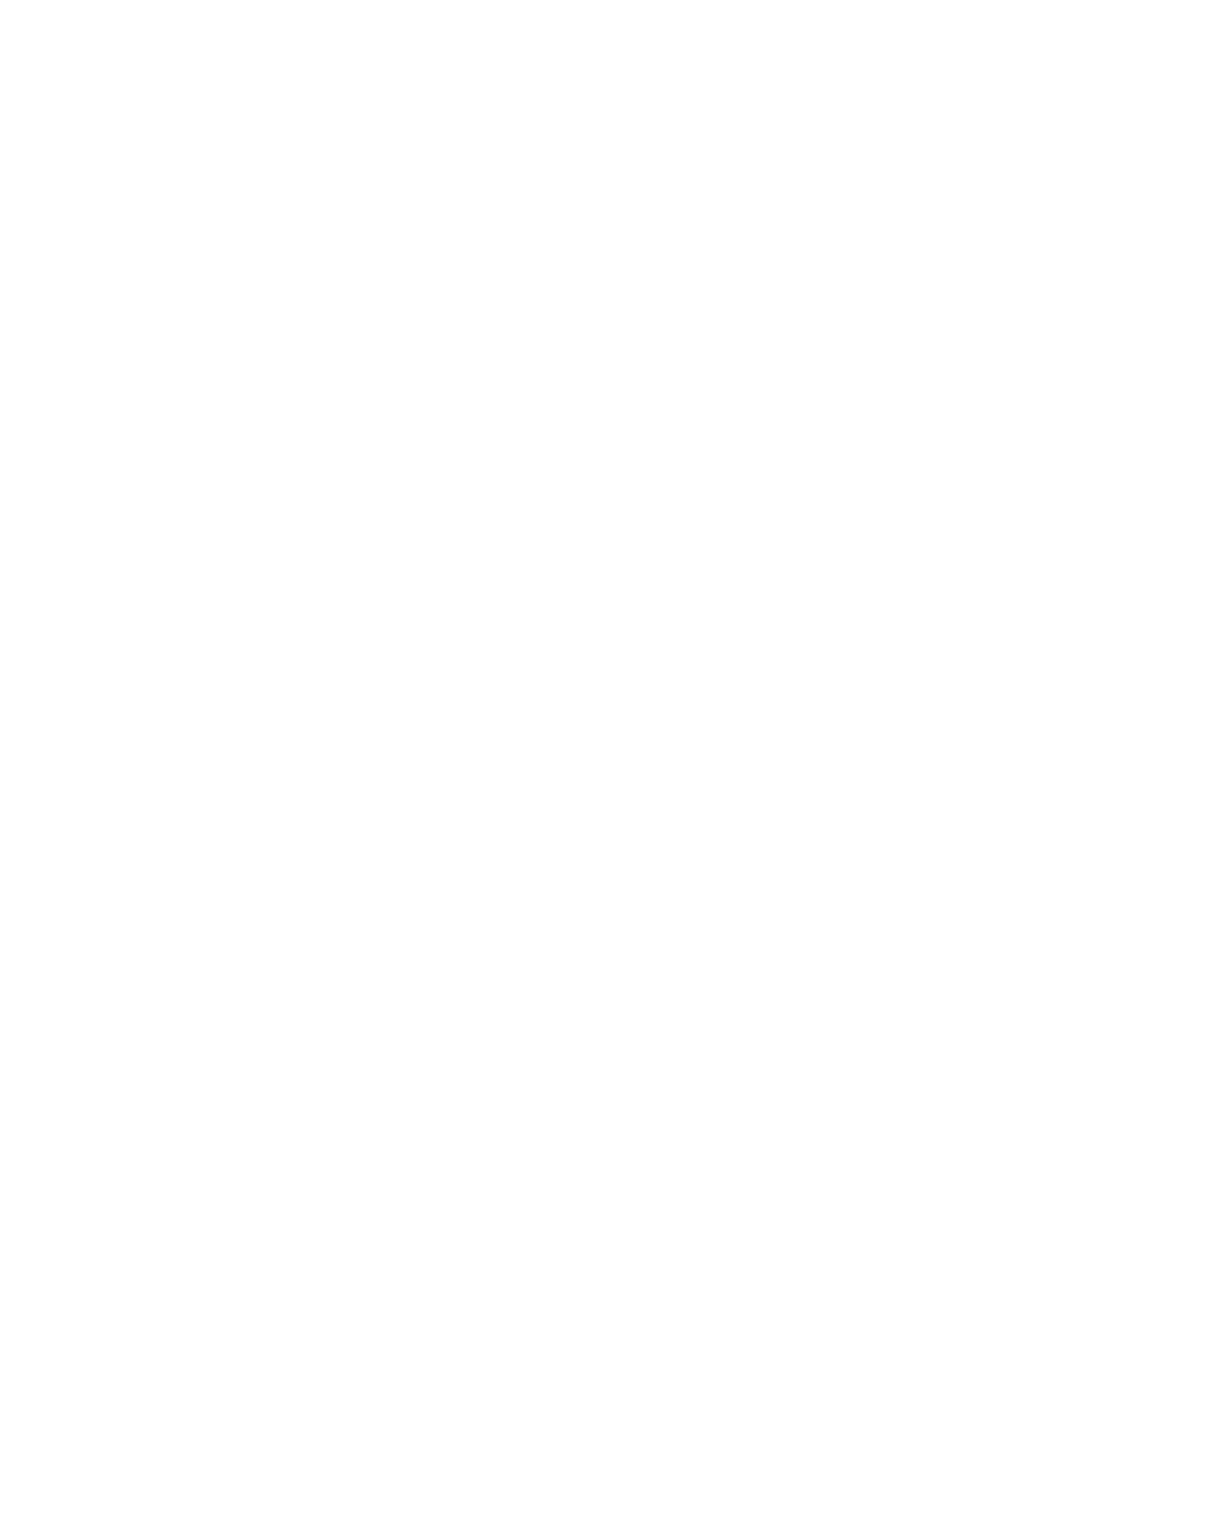 Draganfly logo for dark backgrounds (transparent PNG)